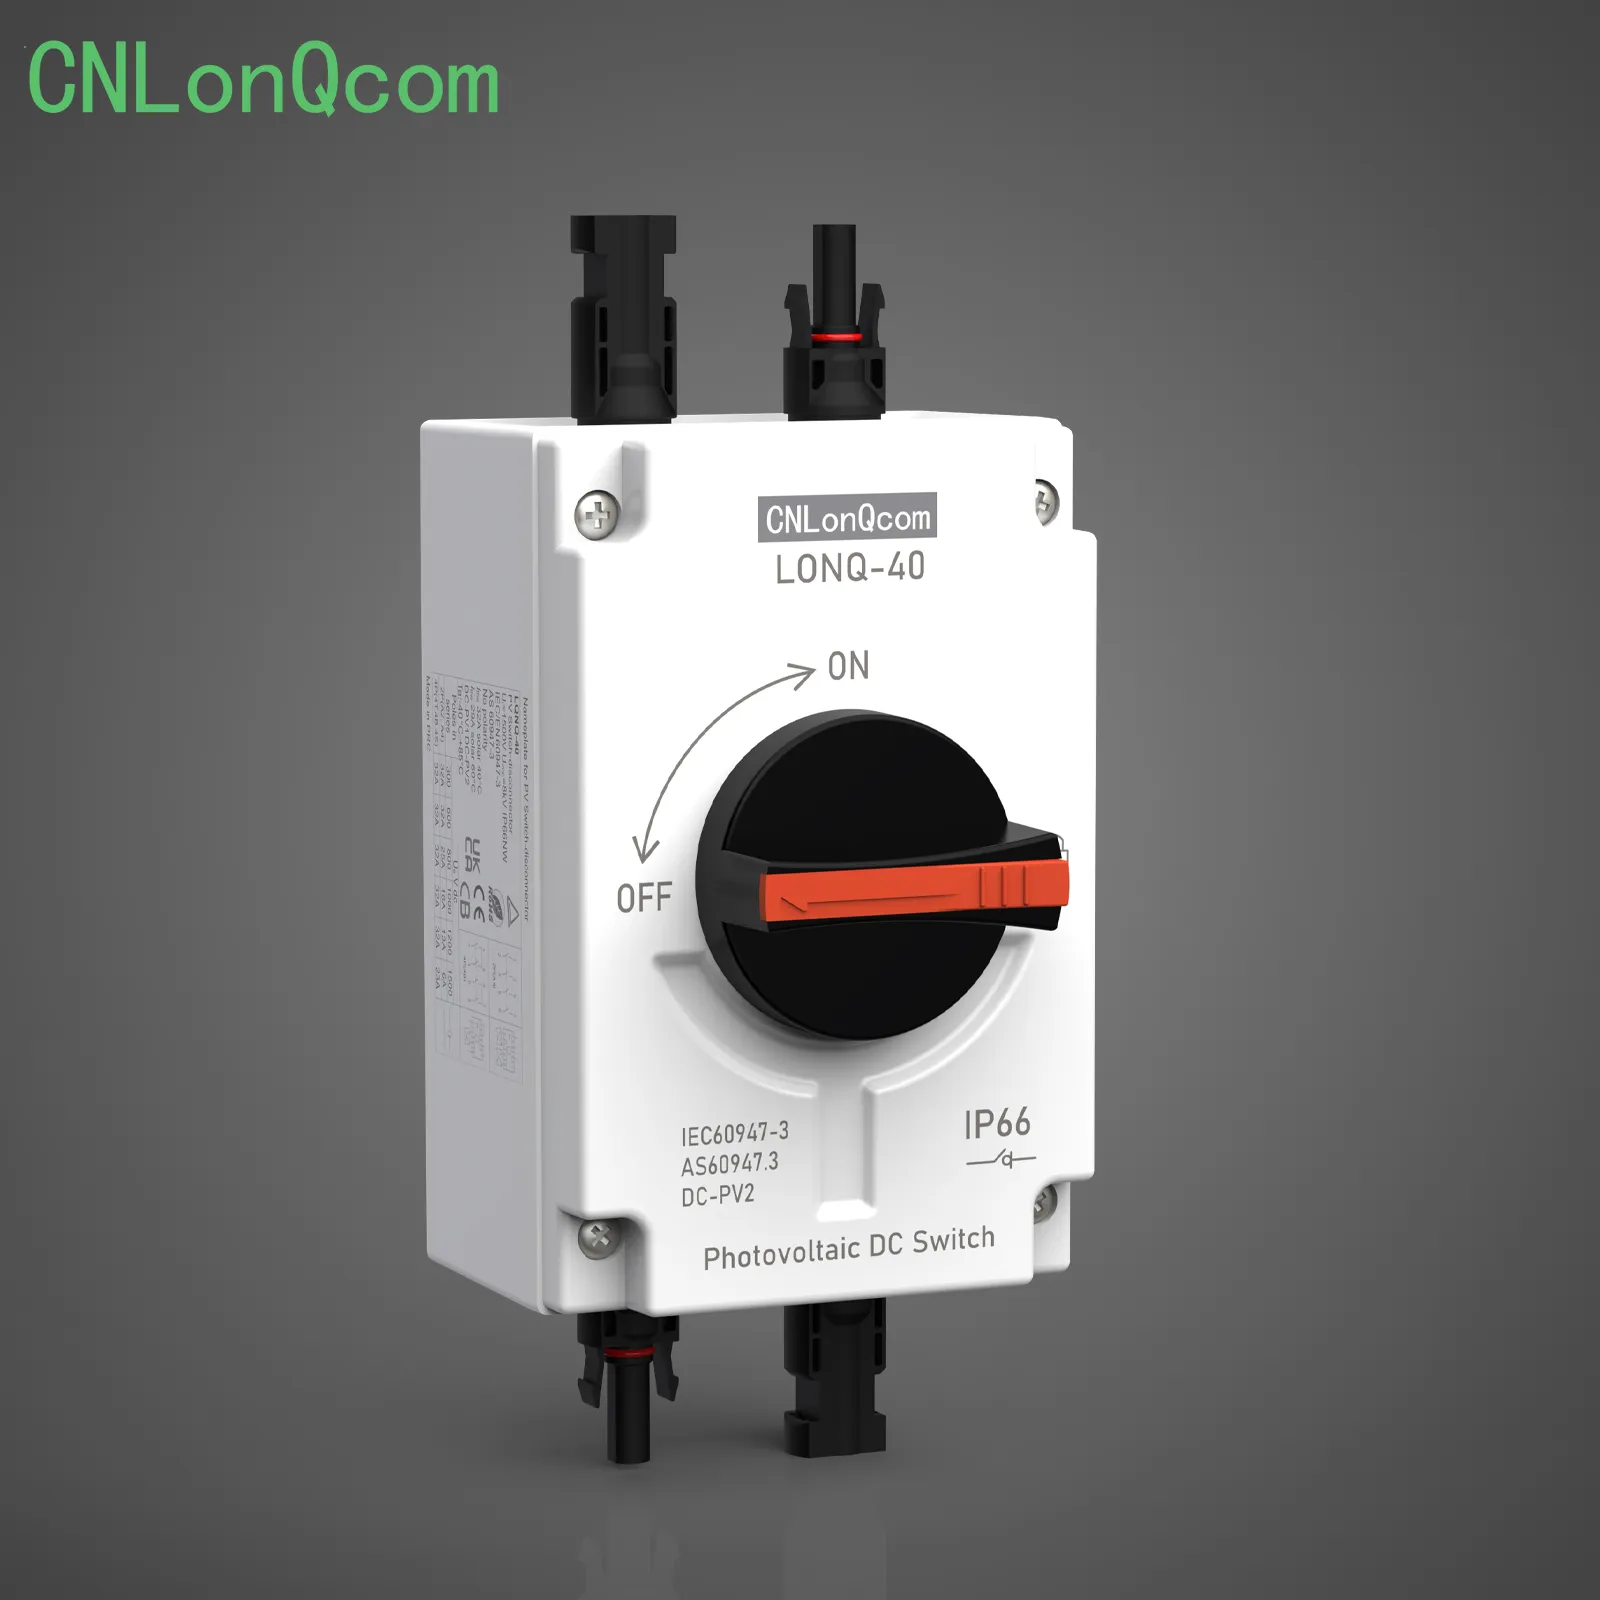 CNLonQcom ने नए वीडियो में आइसोलेटर स्विच दिखाया